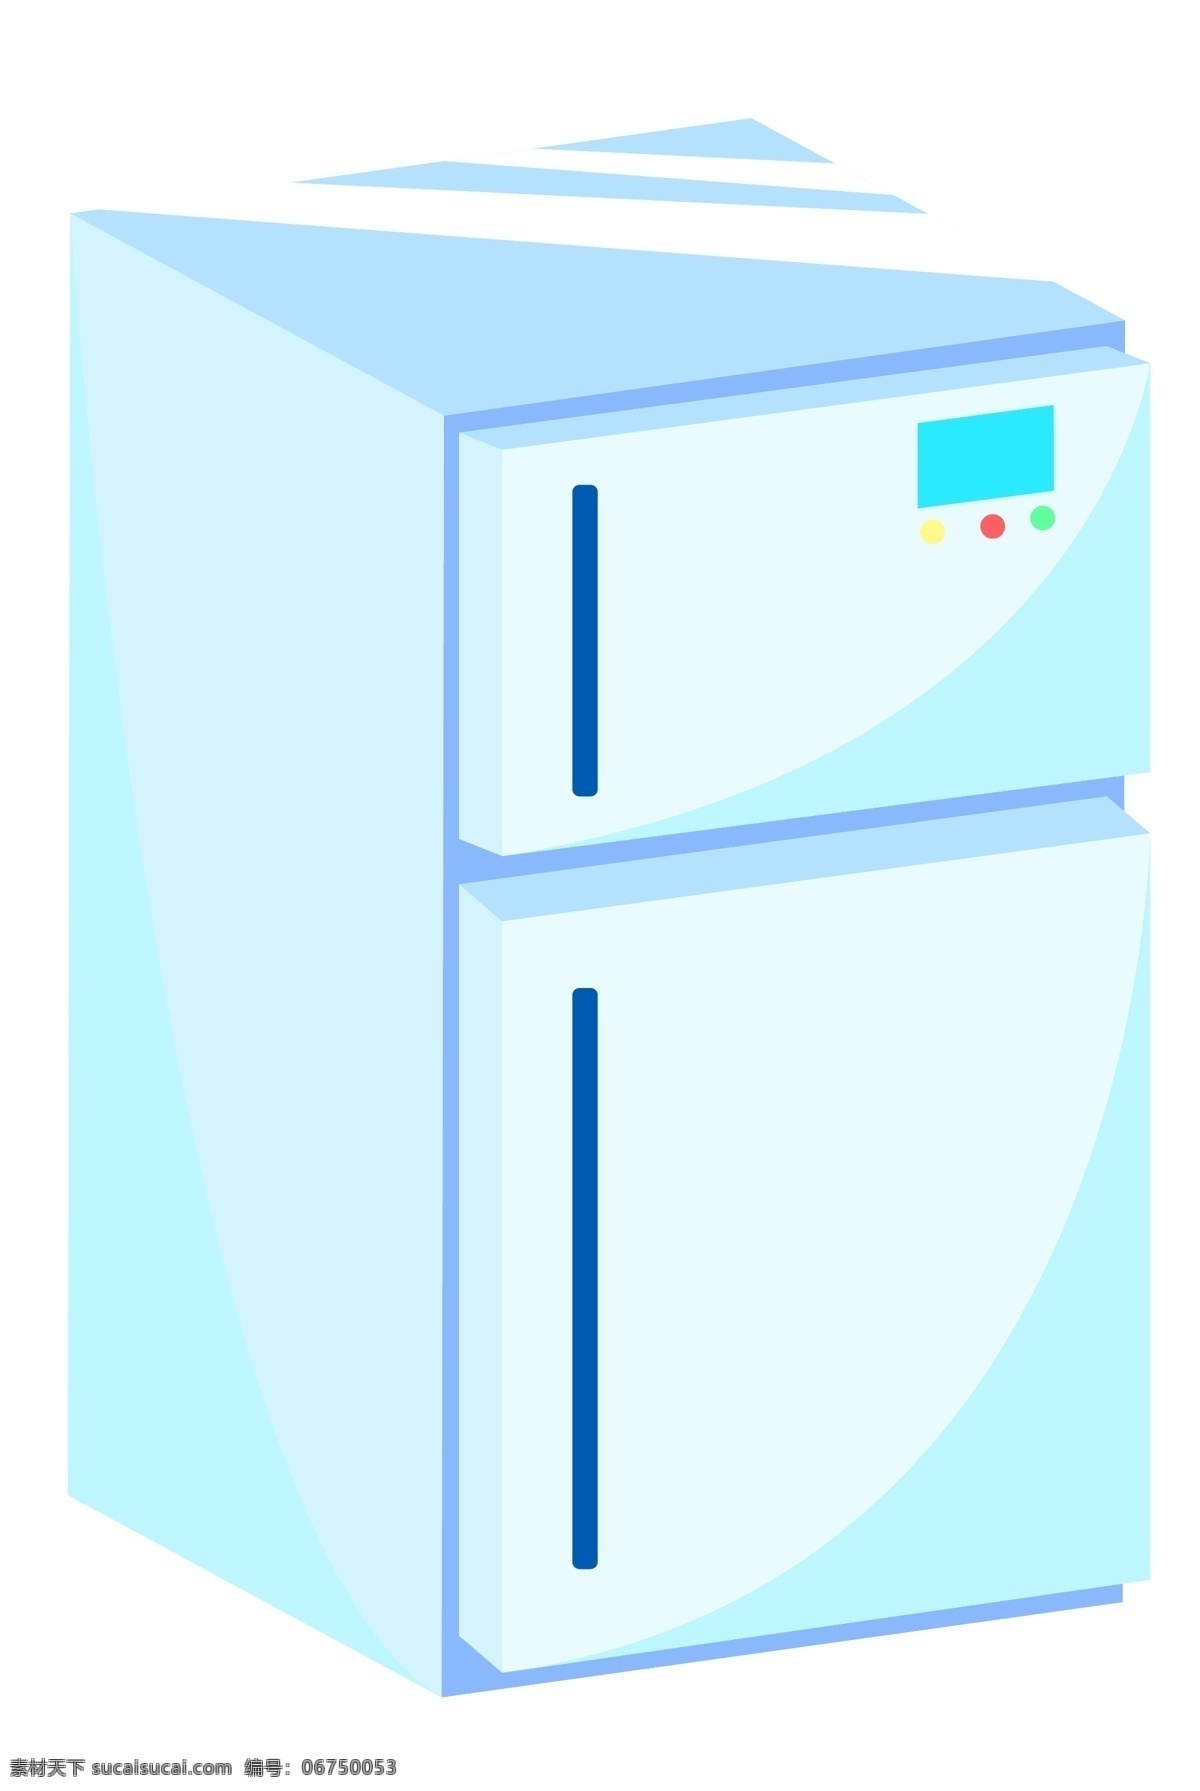 蓝色 冰箱 装饰 插画 蓝色的冰箱 家电冰箱 漂亮的冰箱 创意冰箱 立体冰箱 卡通冰箱 冰箱插画